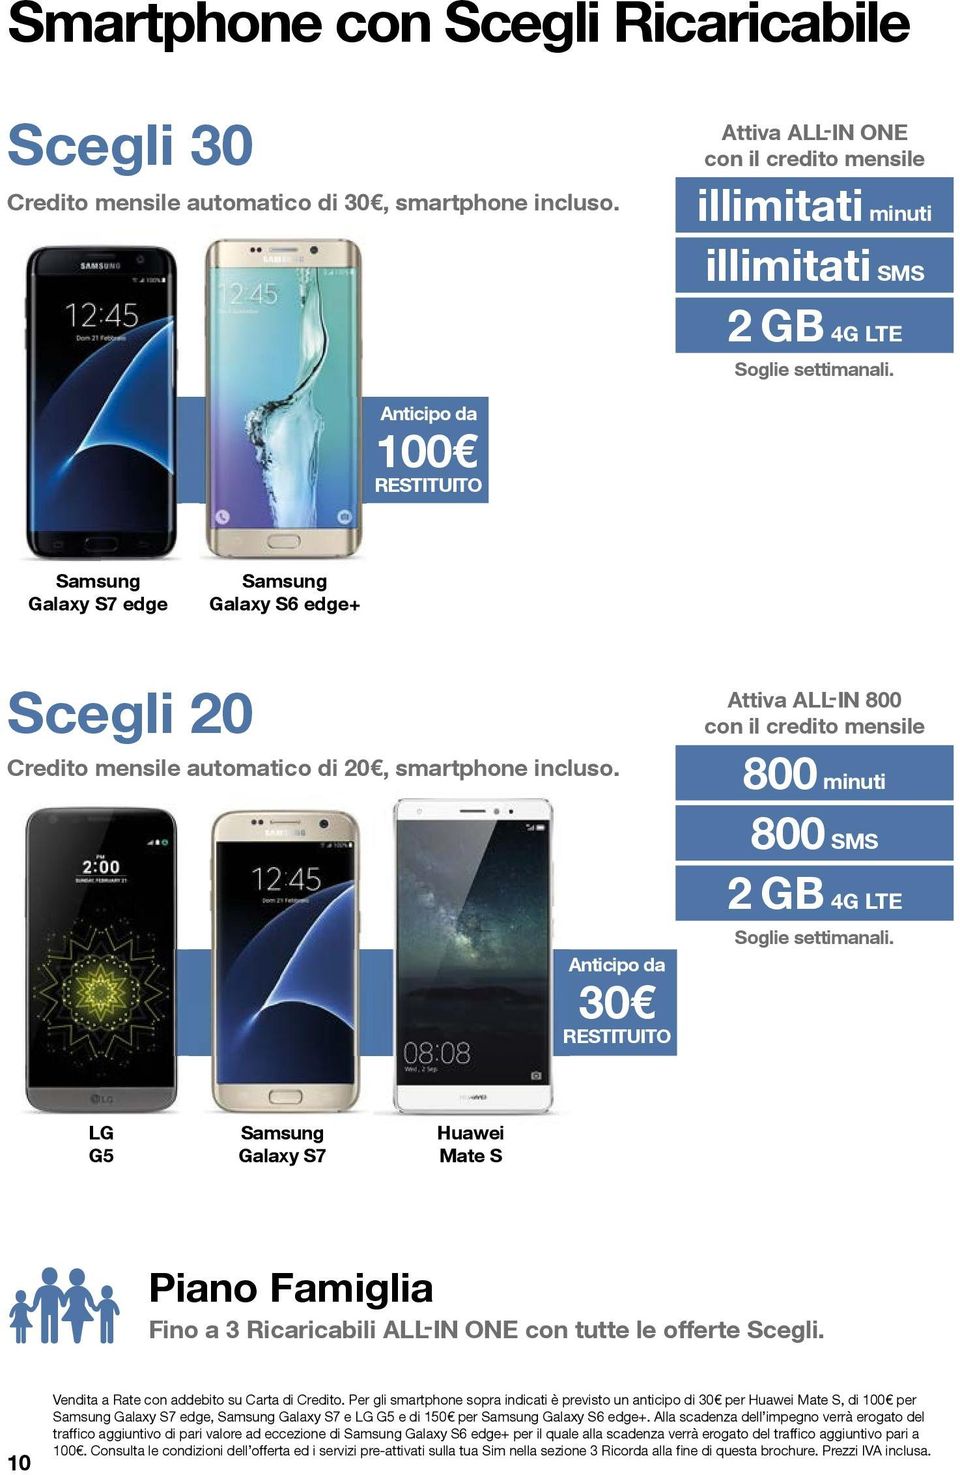 Anticipo da 100 RESTITUITO Samsung Galaxy S7 edge Samsung Galaxy S6 edge+ Scegli 20 Credito mensile automatico di 20, smartphone incluso.